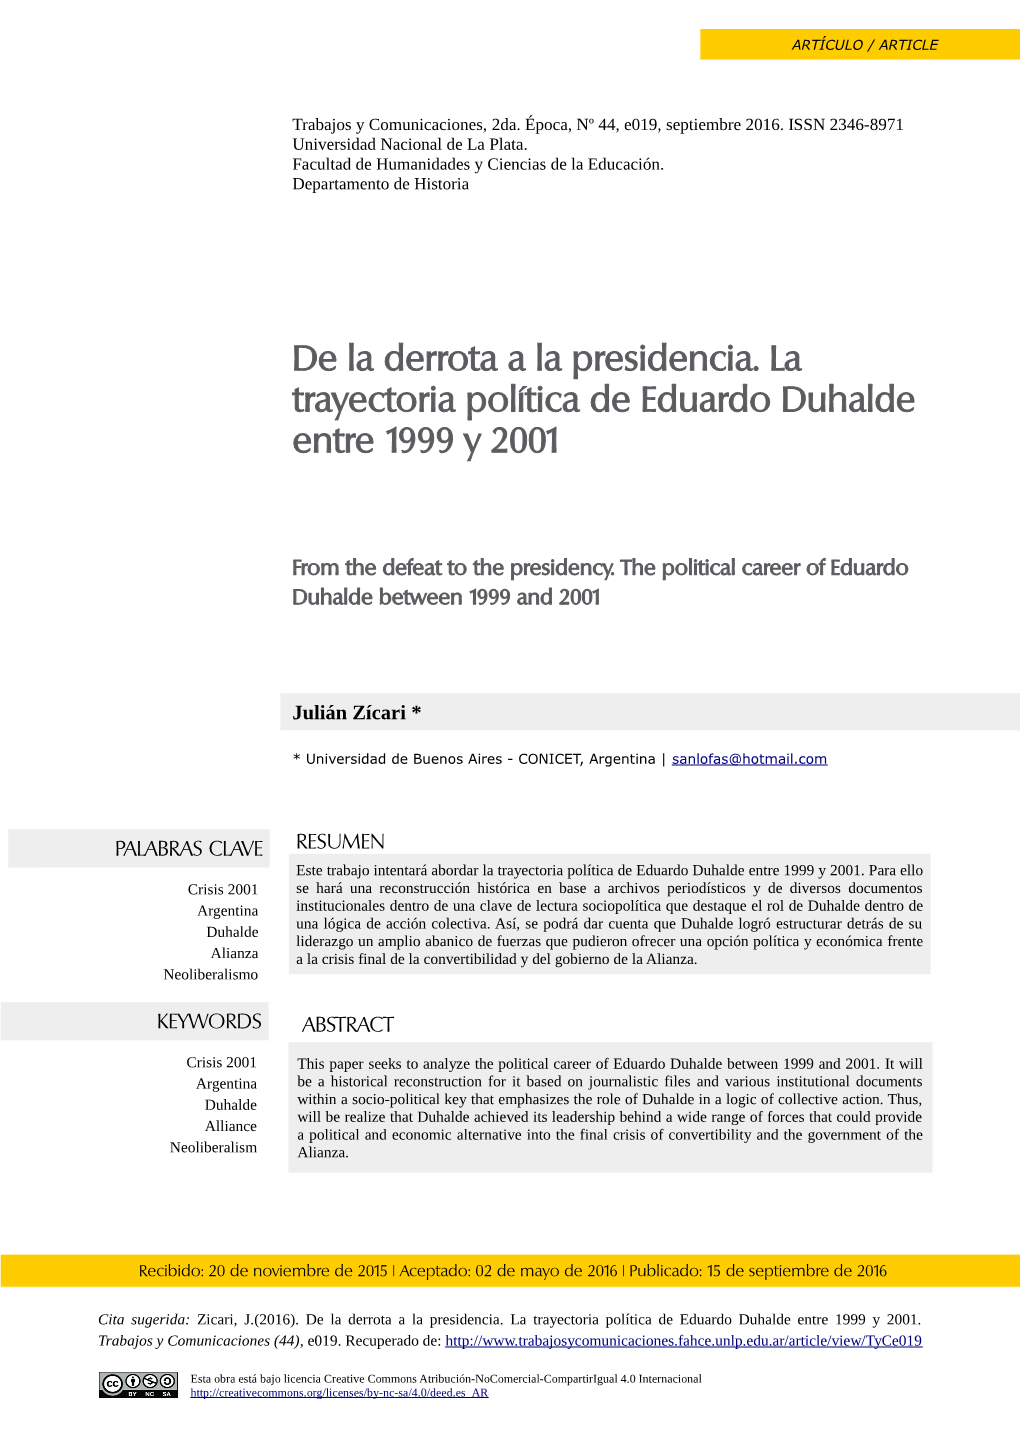 De La Derrota a La Presidencia. La Trayectoria Política De Eduardo Duhalde Entre 1999 Y 2001